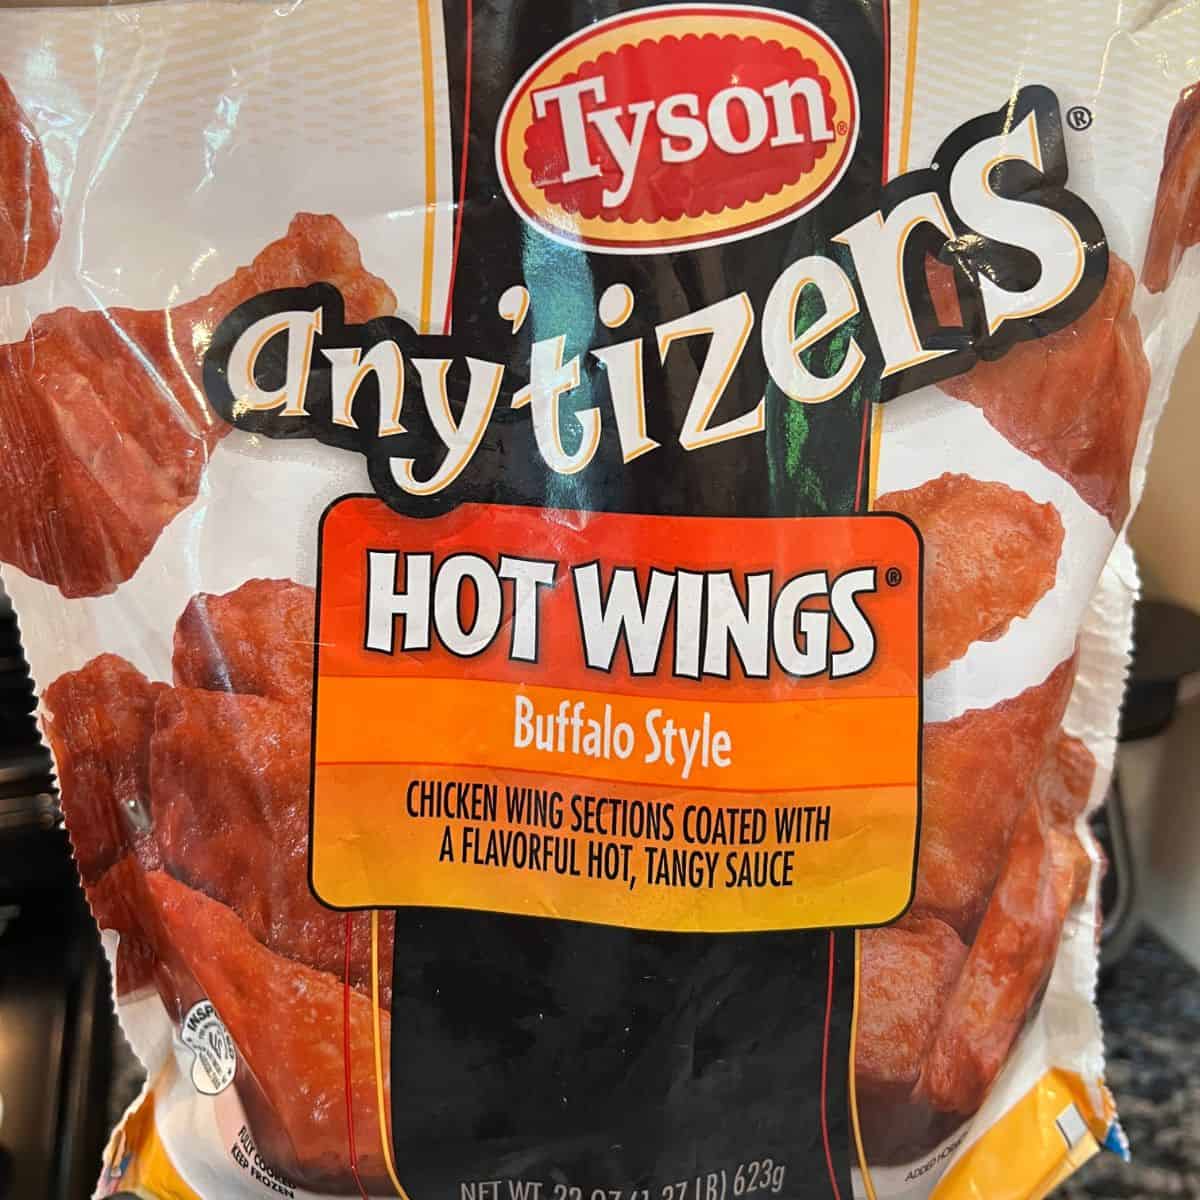 A bag a Tyson frozen anytime buffalo hot wings